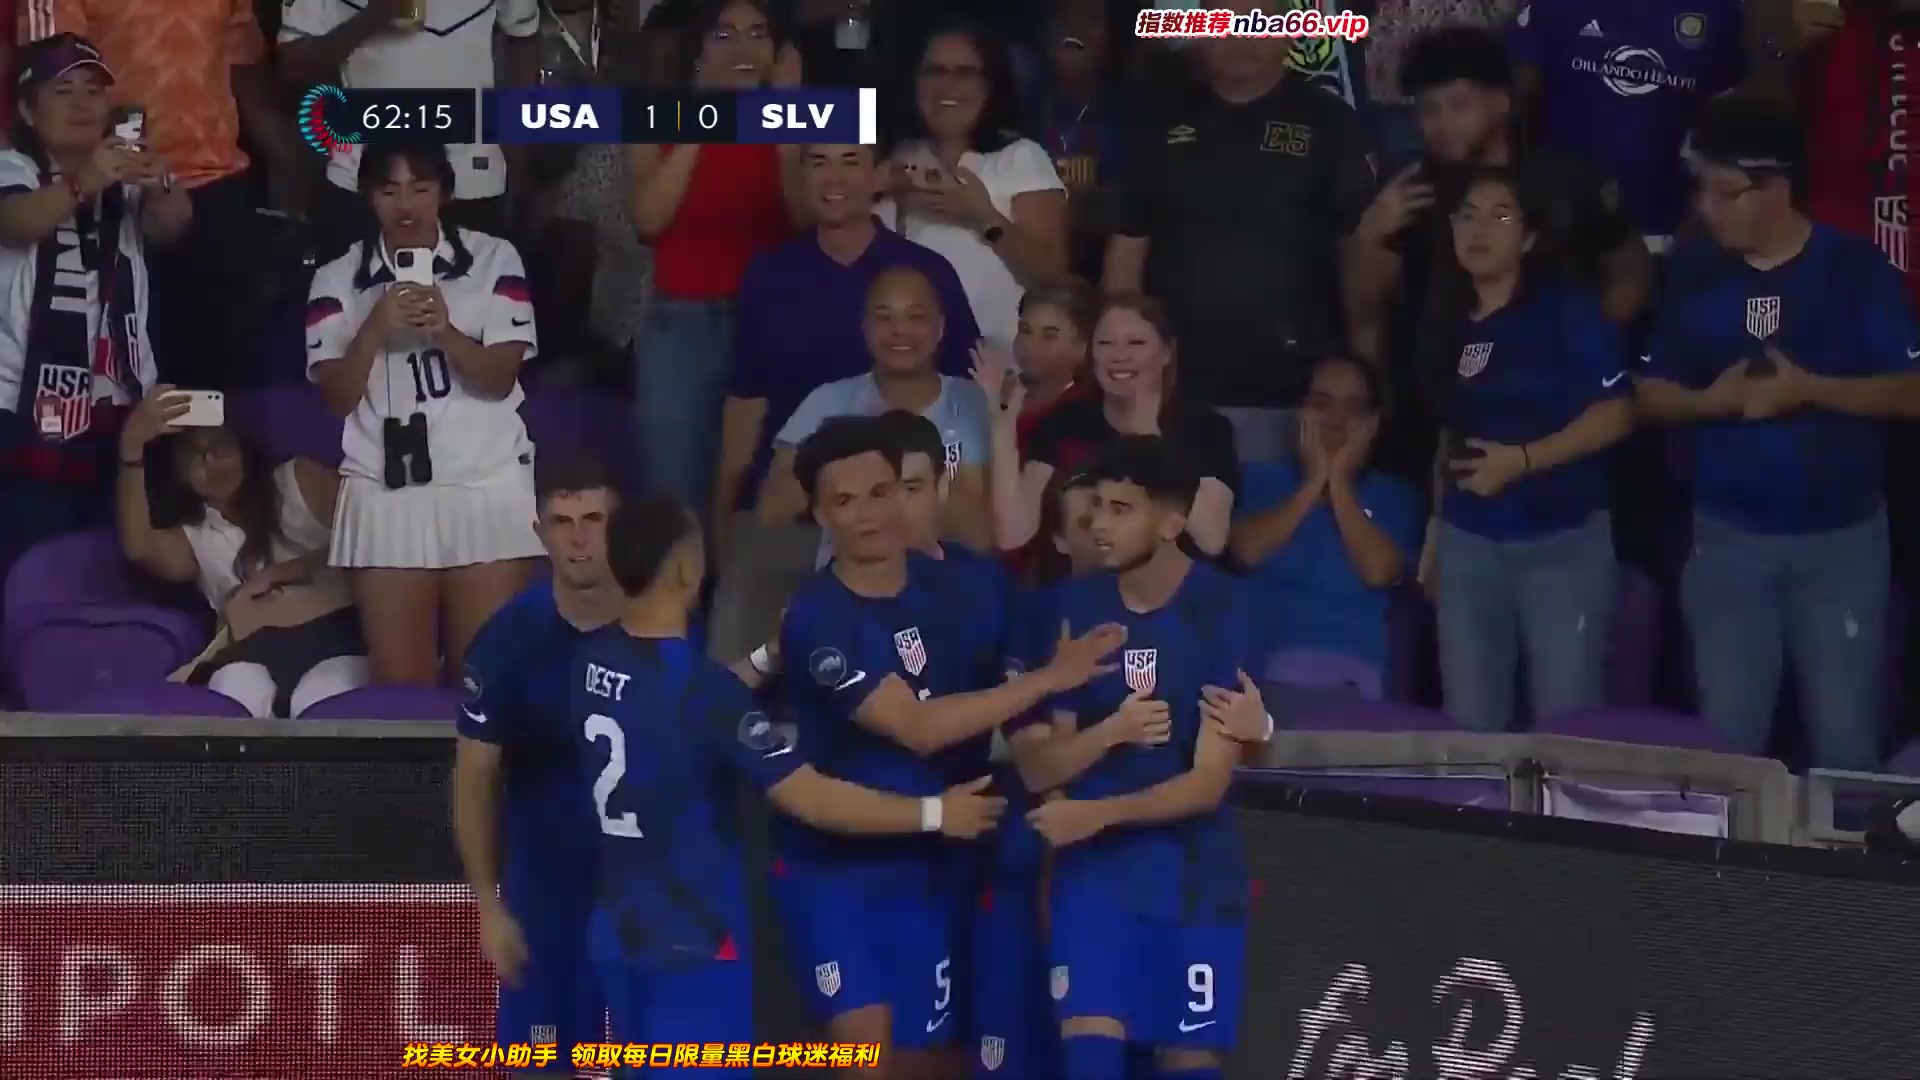 CONCACAF NL USA Vs El Salvador  Goal in 62 min, Score 1:0